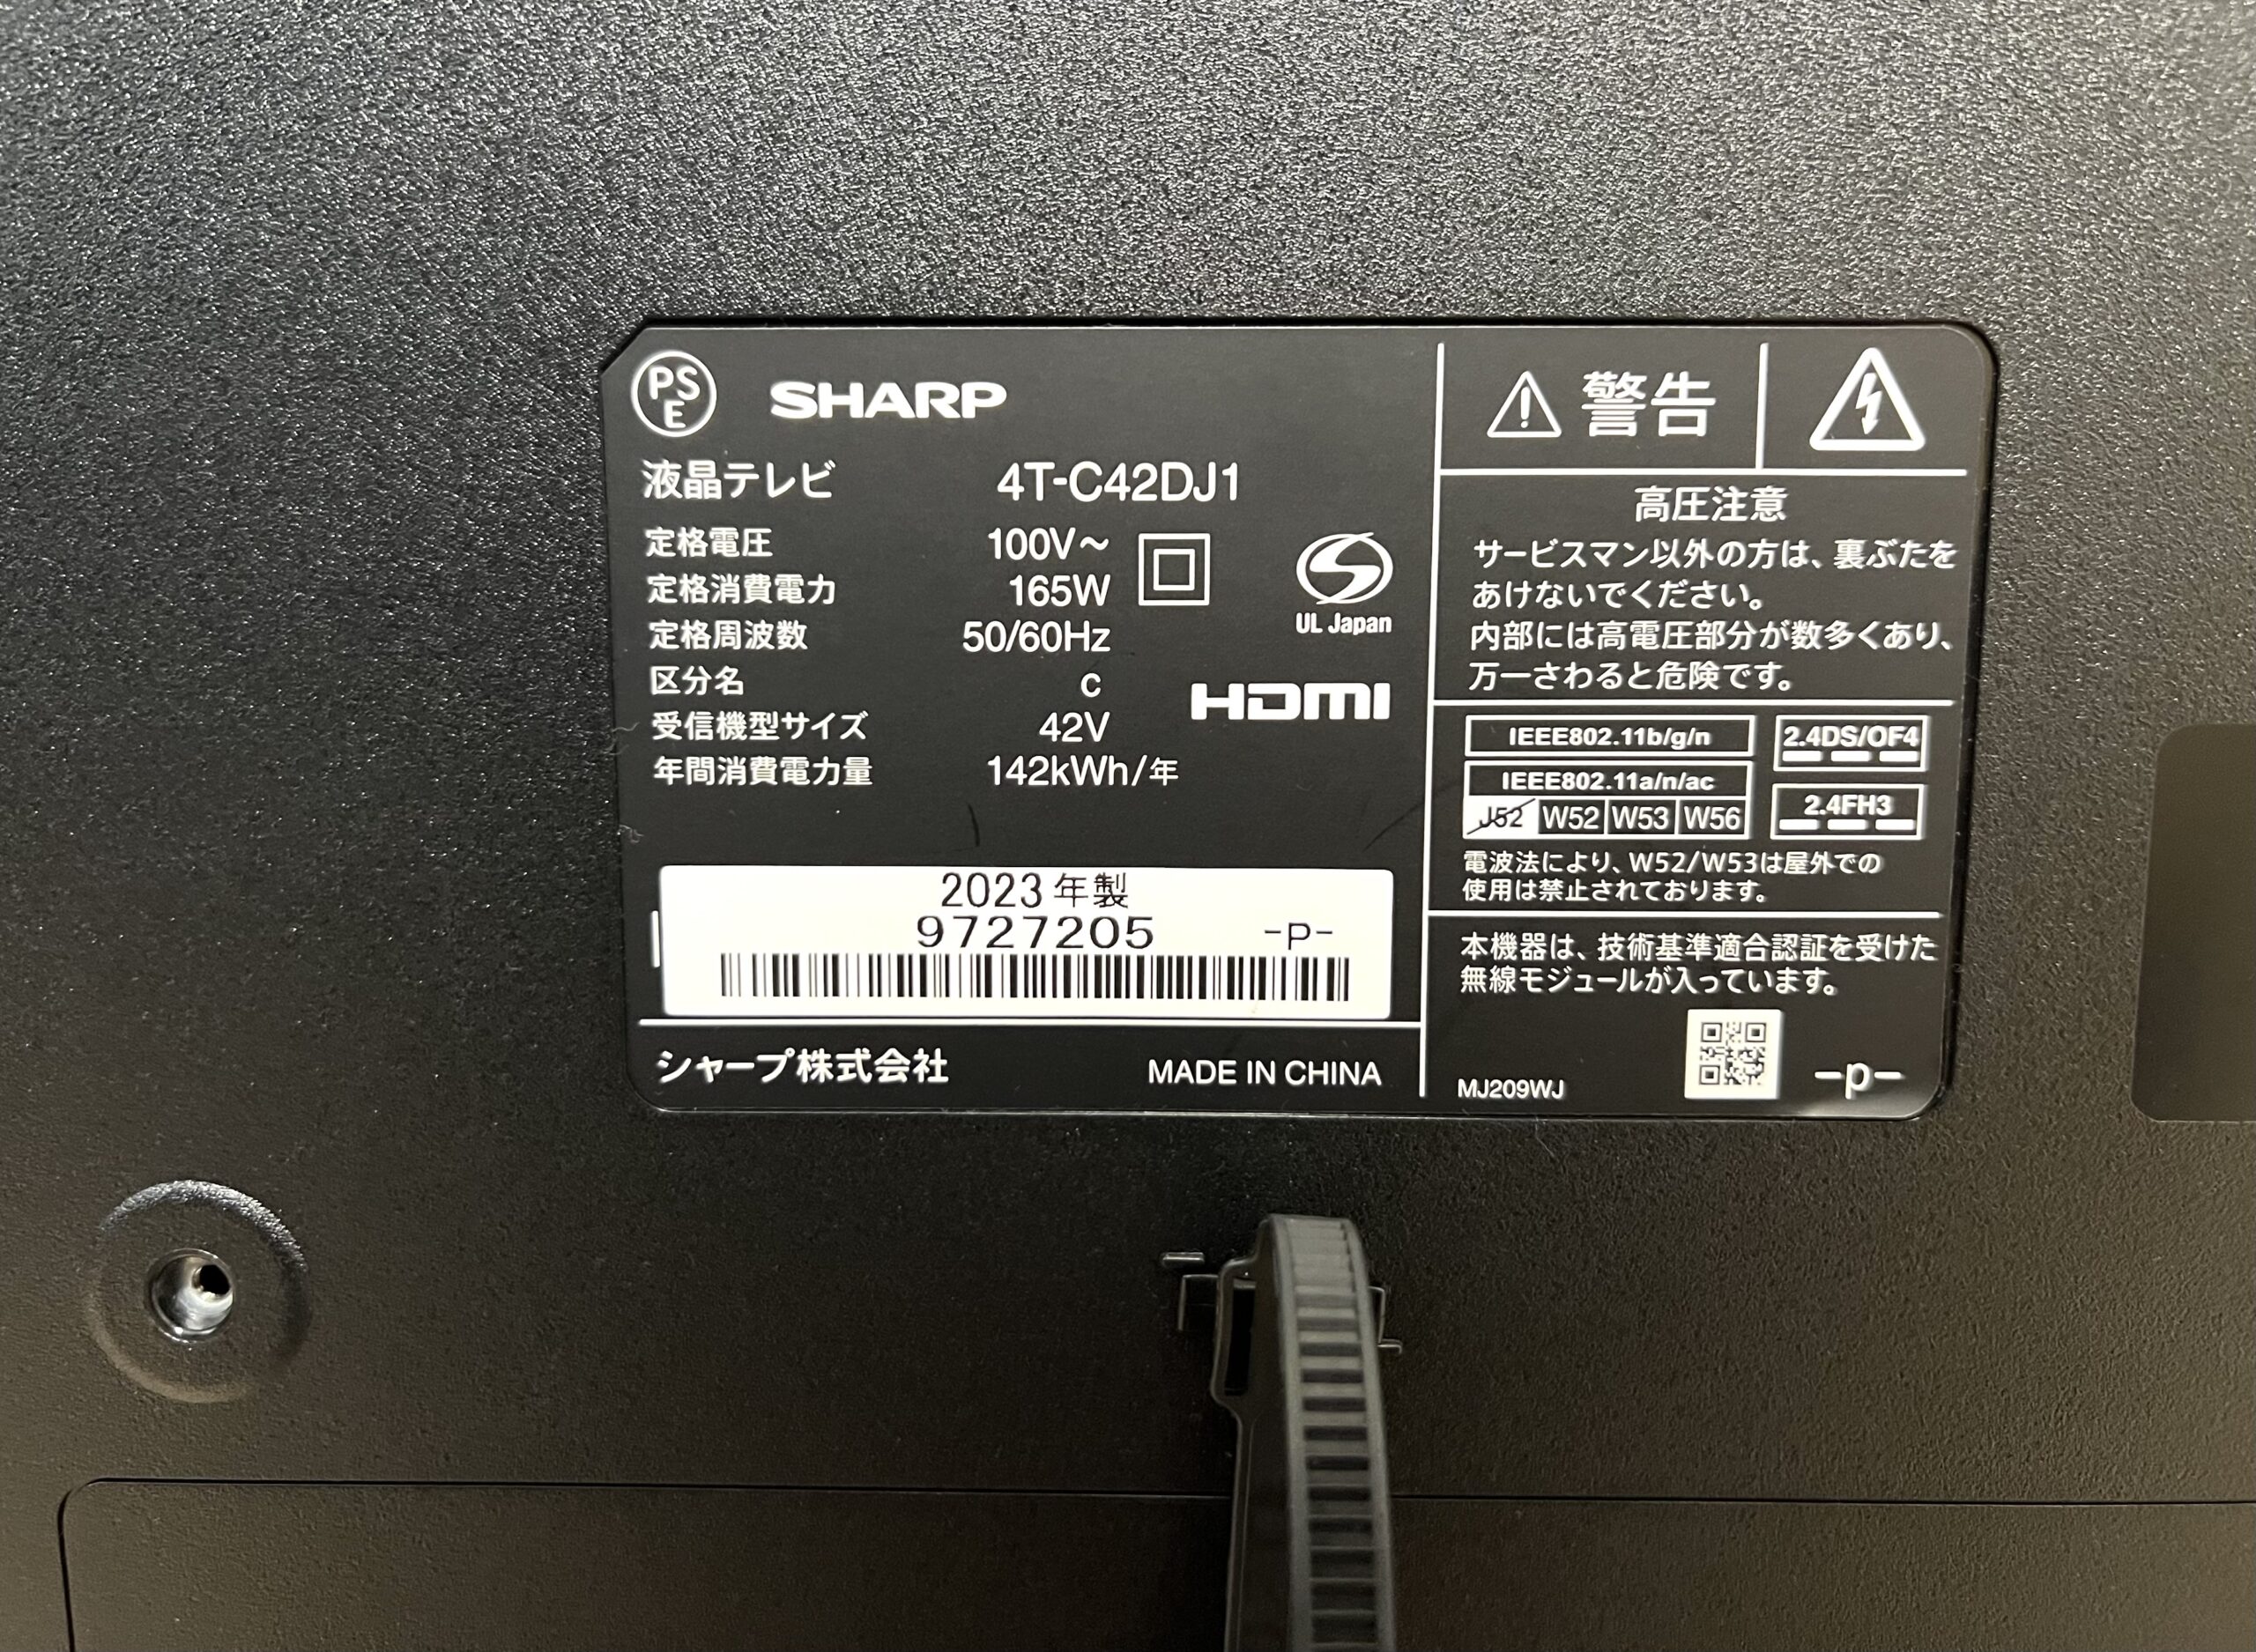 詳しい事はわかりかねます10-122 SHARP 液晶テレビ 4T-C42DJ1 42型 2023年製